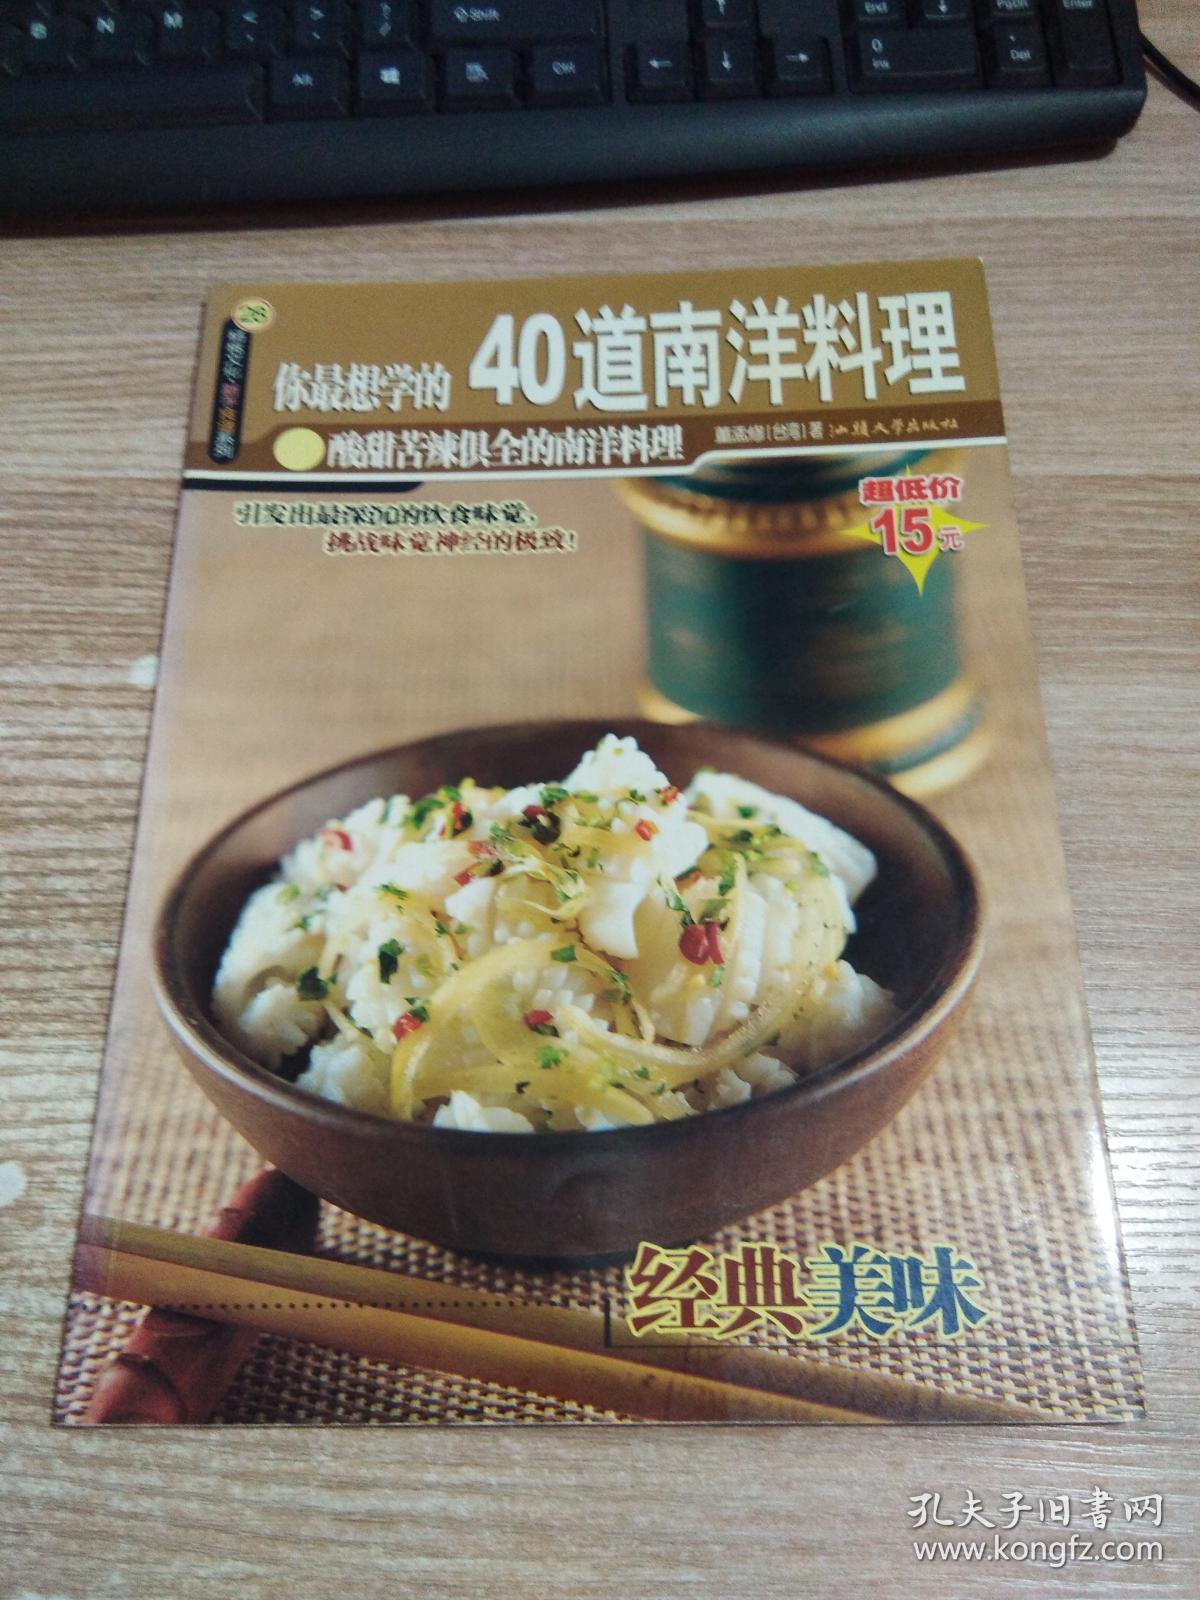 杨桃文化新手食谱系列：金黄卤味50种